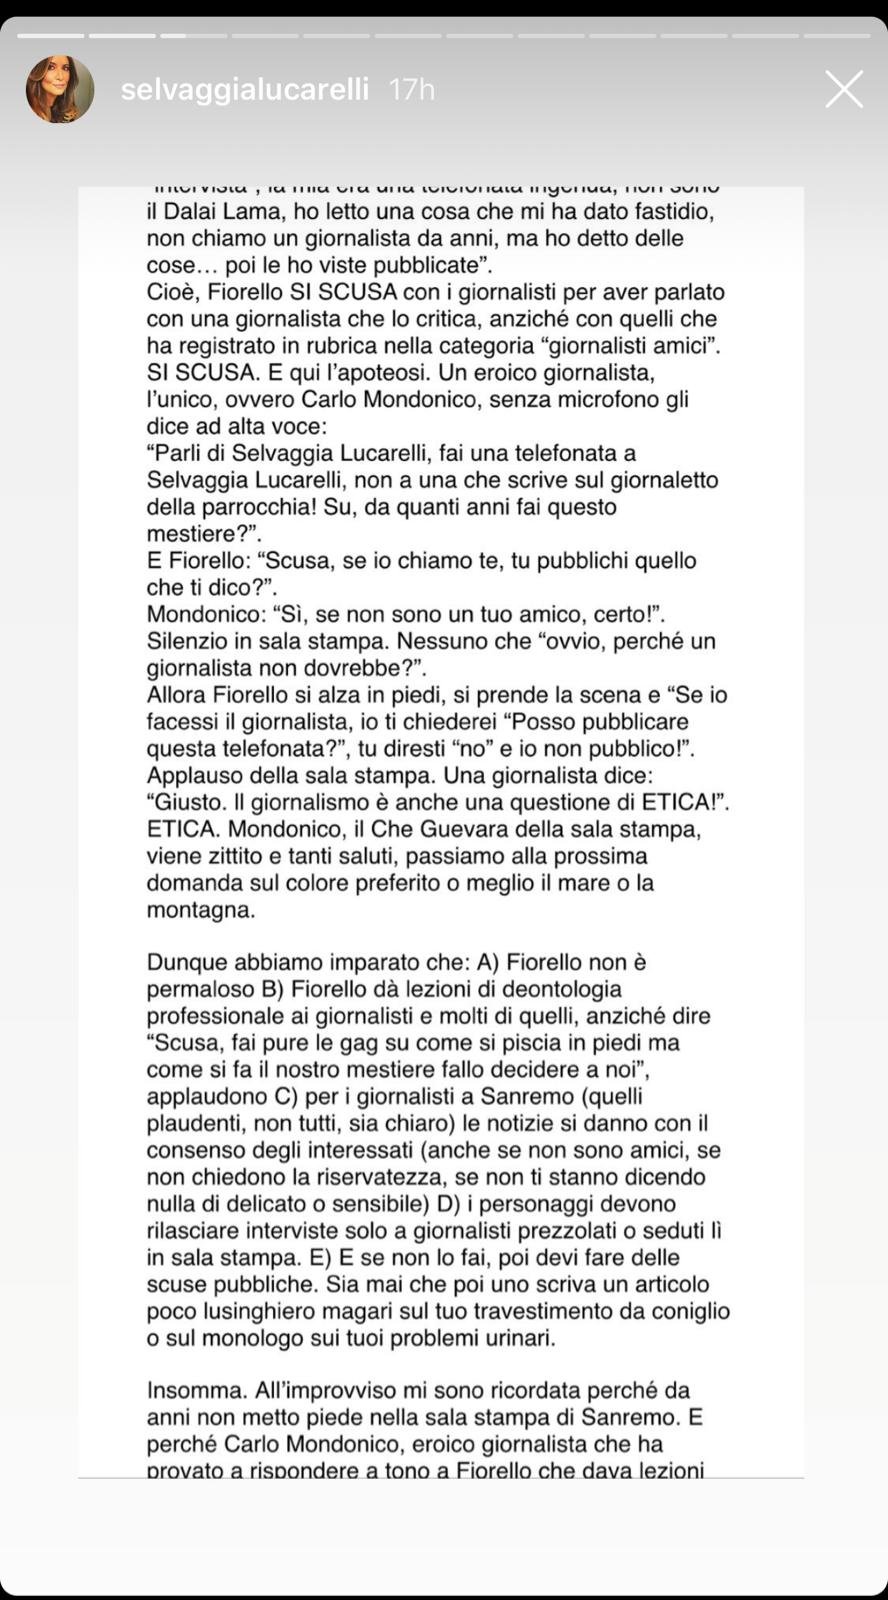 Selvaggia Lucarelli on X: Ragazzi, parlando di Sanremo, non ci siamo  soffermati sulla vera notizia: lo conduce uno che ha il profilo di coppia  su Instagram.  / X